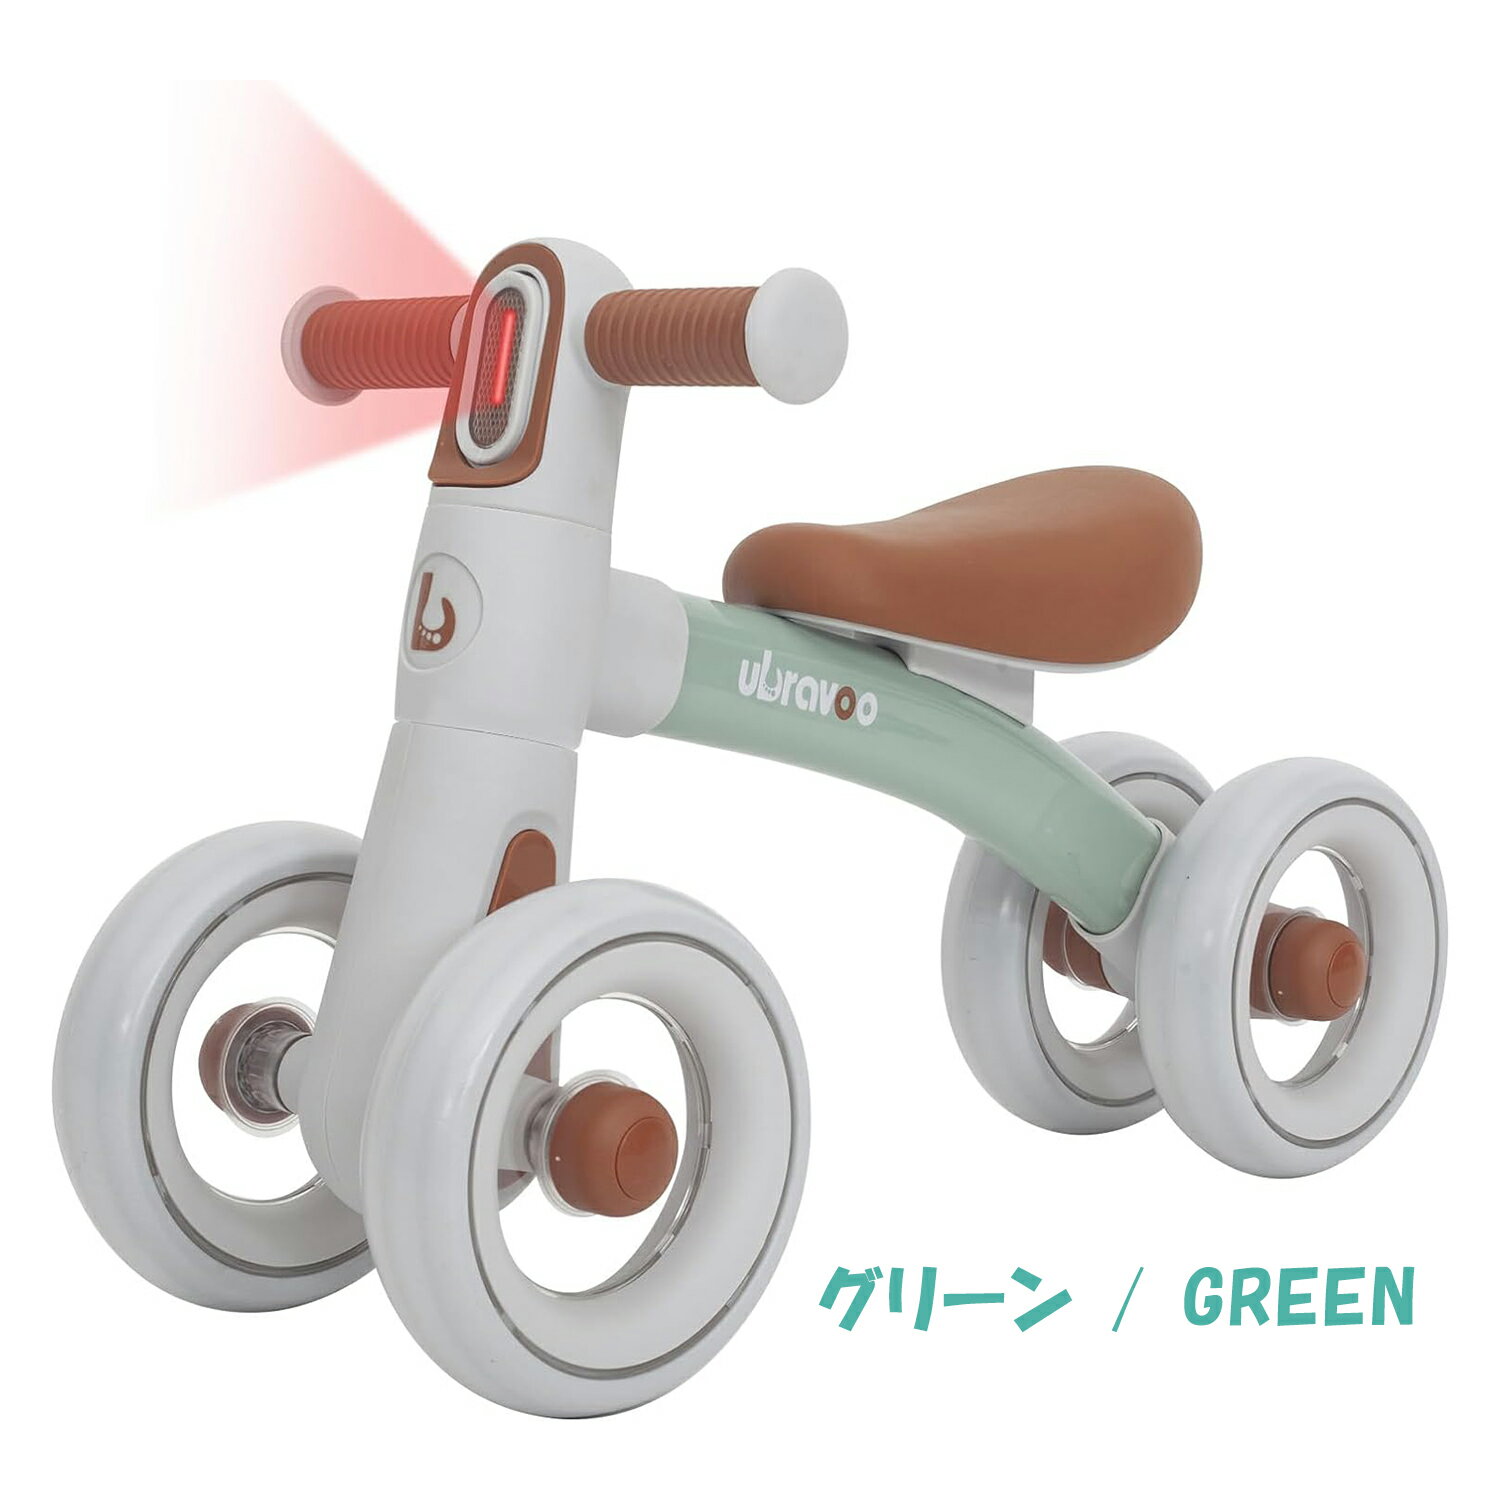 ブランド： UBRAVOO 色： ブラック / グリーン / ピンク 材質： TPR + PU + EVA + 高炭素鋼素材 本体サイズ： 幅55 x 奥行24 x 高さ35cm 商品の重量： 2.3KG 対象年齢層 (説明)： 12 ~ 24ヶ月 キッズ 商品説明： ・UBRAVOO三輪車は幼児が歩いたり自転車に乗ったりするのに最高のプレゼントです。赤ちゃんのバランス、方向転換、協調性、探検心を育て、子供のころから自信をつけさせるのに役立ちます。 ・「組み立て簡単」 組み立てはたったの3ステップです。 ハンドルも取り外しやすいので、収納や持ち運びにも便利です。子供に取って軽くコントロールしやすい乗り物であることが重要です。圧倒的な軽さが、また転倒する時の衝撃も軽くしてくれます。 ・「独特のモダンなデザイン」 バッテリーを装着するだけで3つのライトモード（点灯ー流水ー点滅）が楽しめます。ホイール中央には透明なPC素材を採用し、遠くから見ると透かし彫りのようなデザインが、この幼児三輪車に現代的なテクノロジー感を加えています。シンプルでお洒落な色合いがとてもかわいいです。誕生日や子供の日、出産祝いなどのプレゼントとしてはおすすめです。どこでもお子さんがフォーカスですよ。 ・「安全で上質な素材」 高炭素鋼製のフレームを採用しており、軽量で耐久性が抜群！滑り止めハンドルと柔らかい革張りのシートがついています。また空気を入れる必要がないEVAタイヤを採用し、滑り止め飛散防止で耐摩耗性もいいため、床を傷つけない、暑い日や雨の日でも室内で子どもを楽しく遊ばせることもできます。 ・「使い心地がいい」 ペダルなしとと幅の広いクローズドタイヤは、赤ちゃんの足を挟まないようにしてくれます。子供用三輪車の前輪には重力ステアリングがついていて、前の方は135°の回転に制限されているので、赤ちゃんが走行中に障害物にぶつかったり、路面が荒れていても転倒を防ぐことができます。*注意:赤ちゃんが電池を取り出せないように、ライト部分は厳重に設置されていますので、ご両親が取り外す際は注意が必要です。 ※ご使用前に必ず取扱説明書を読んでください。